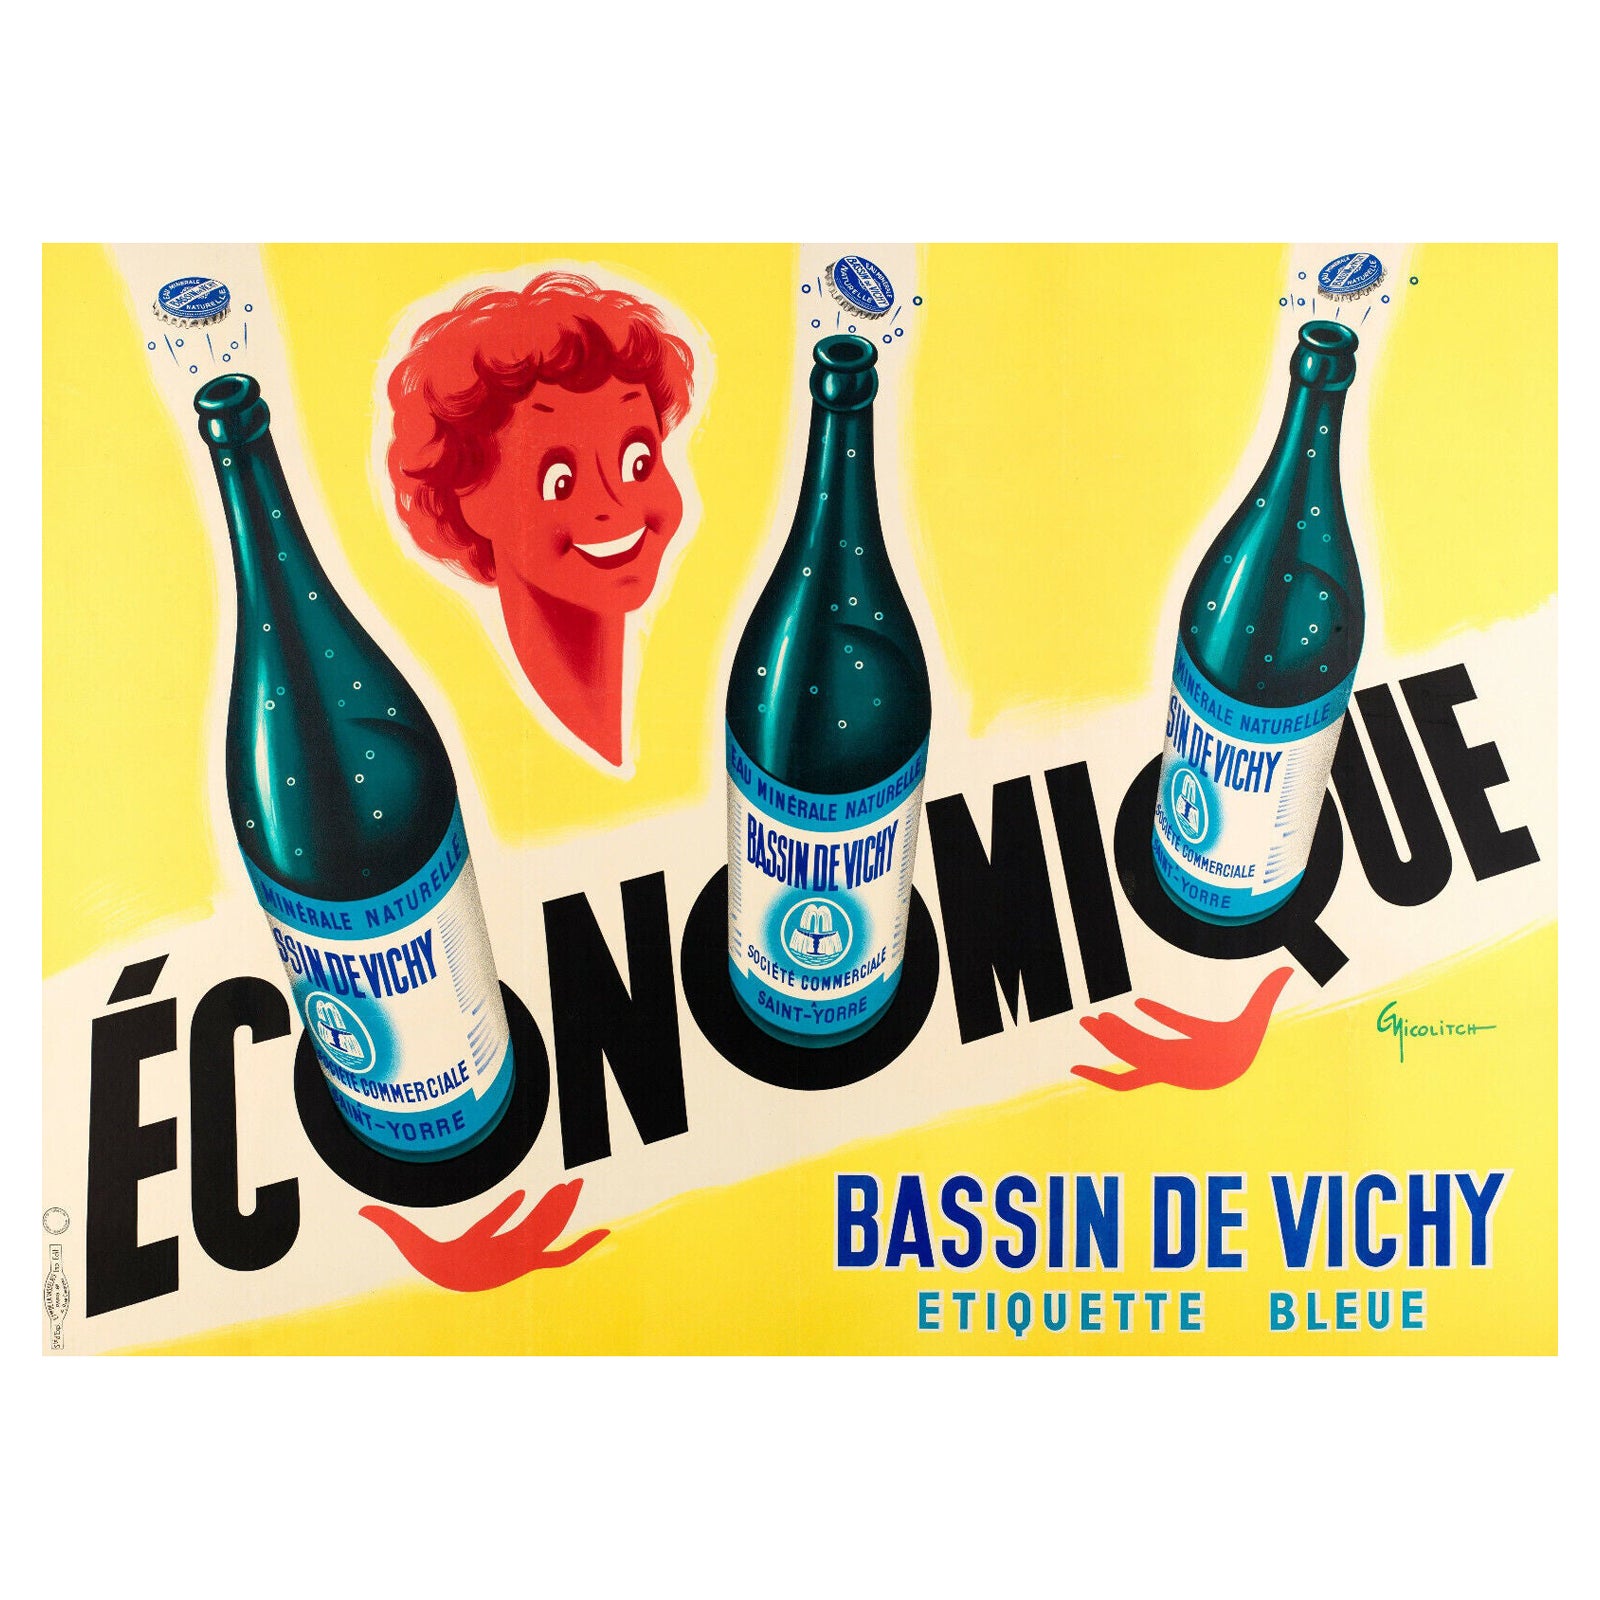 Original Vintage Poster-G. Nicolitch-Vichy Saint-Yorre-Mineralwasser, 1953 im Angebot